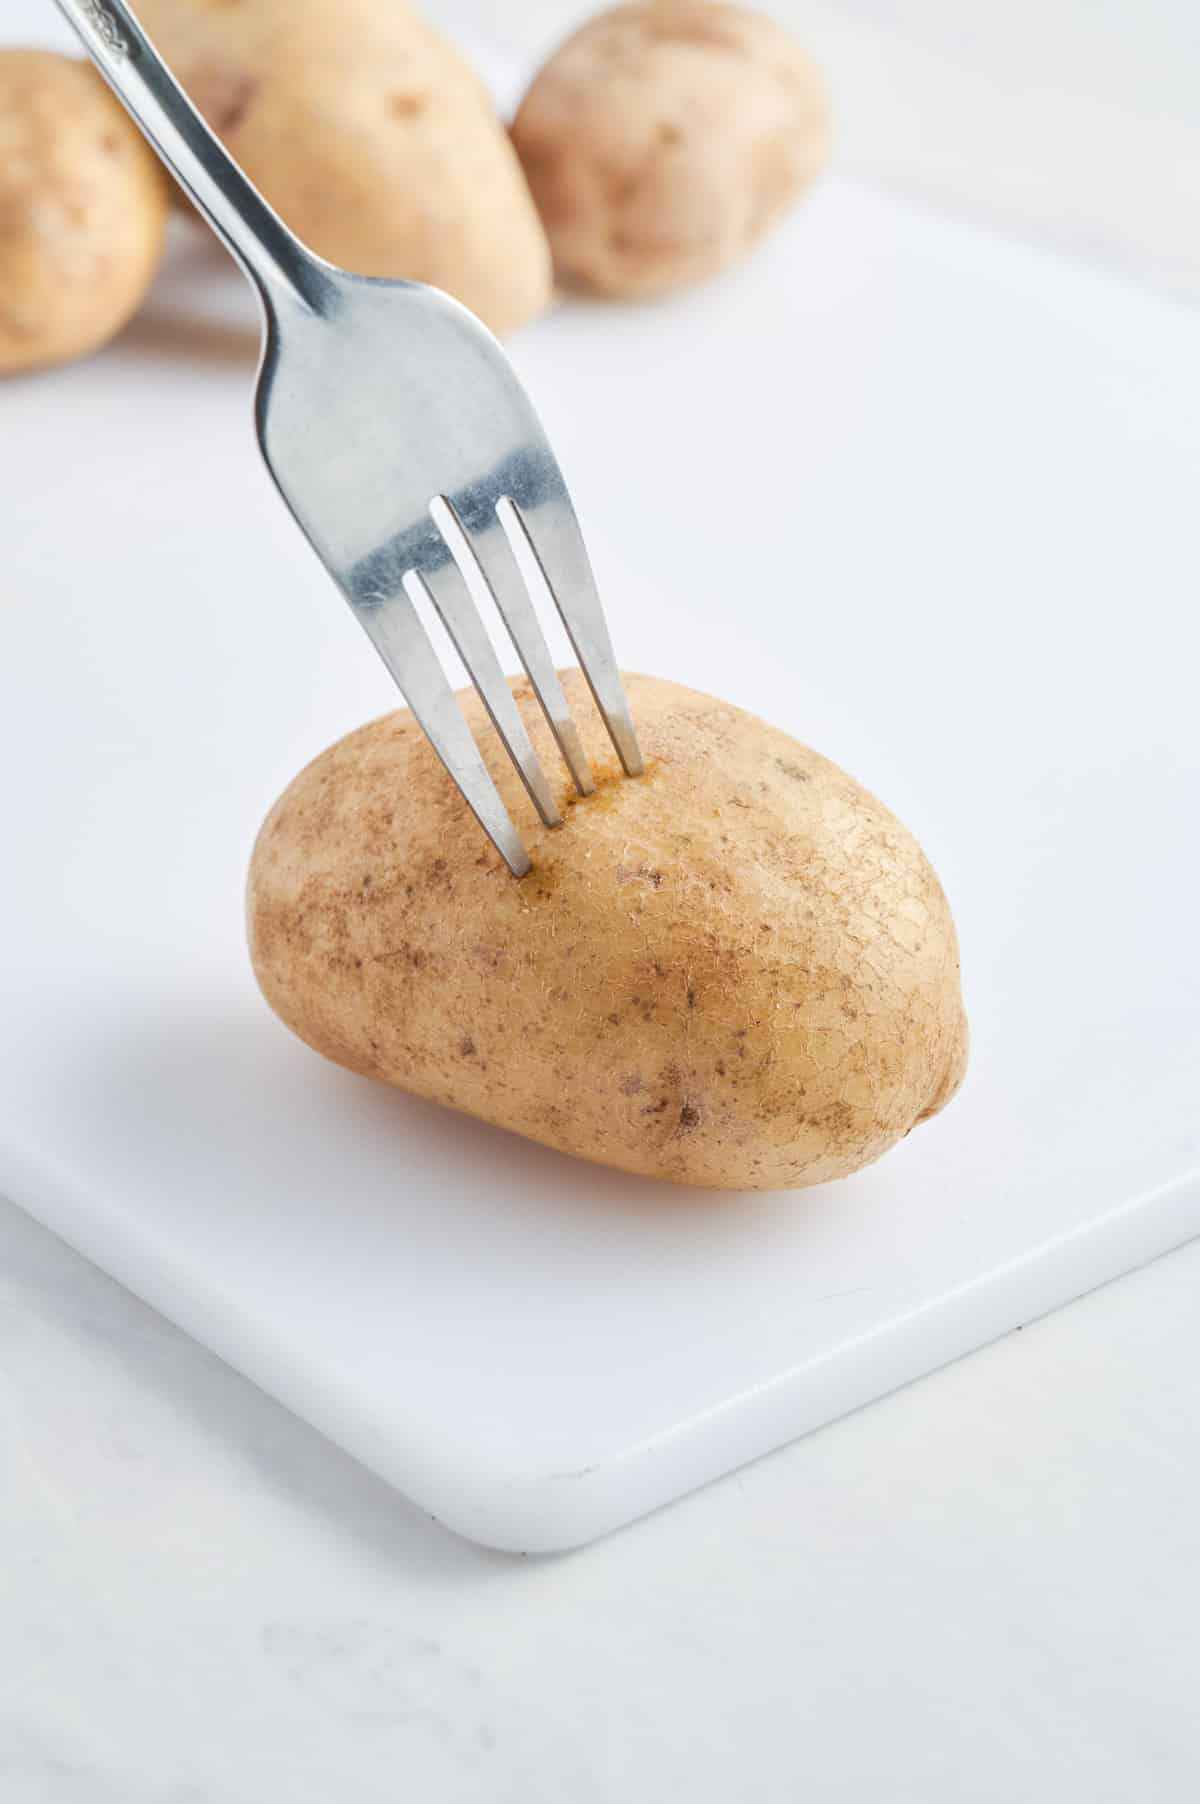 A fork pokes a potato.